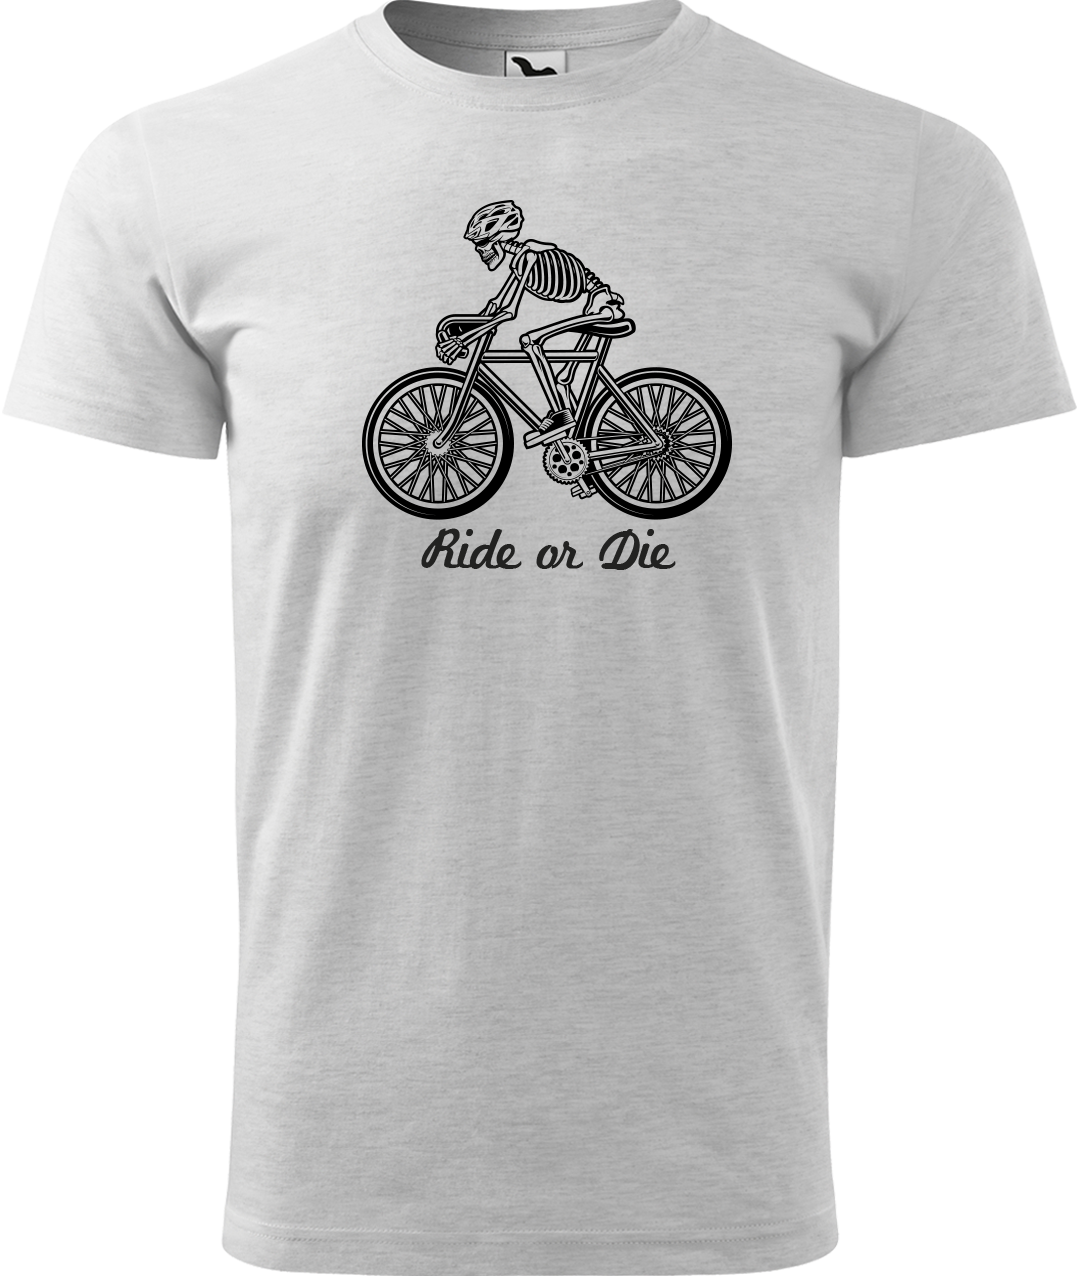 Pánské tričko pro cyklistu - Ride or Die Velikost: L, Barva: Světle šedý melír (03)